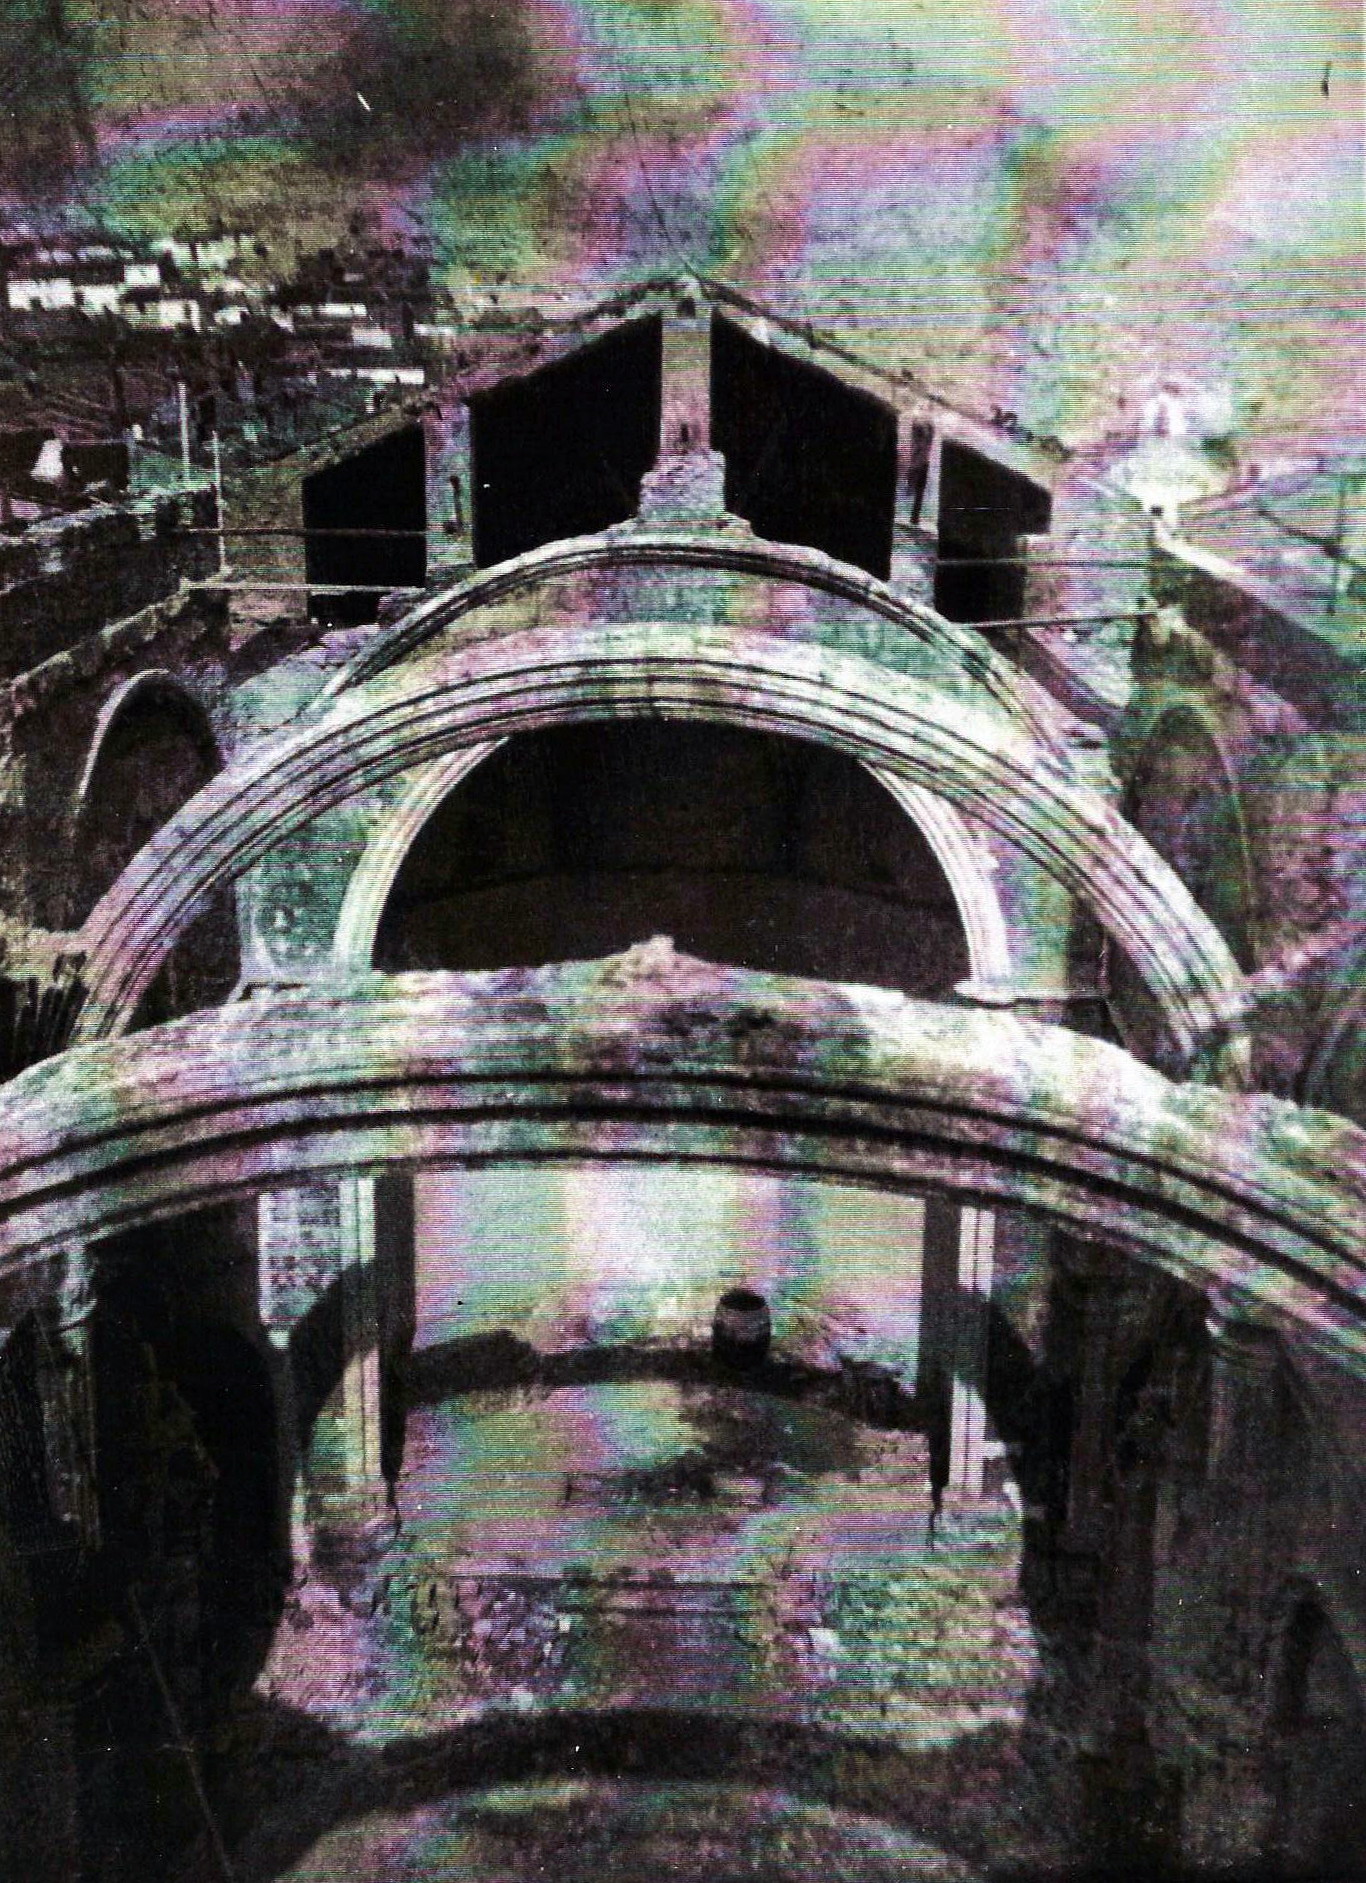 Aportaciones vecinales permitieron restaurar las bóvedas del templo de Santa María entre 1949 y 1954